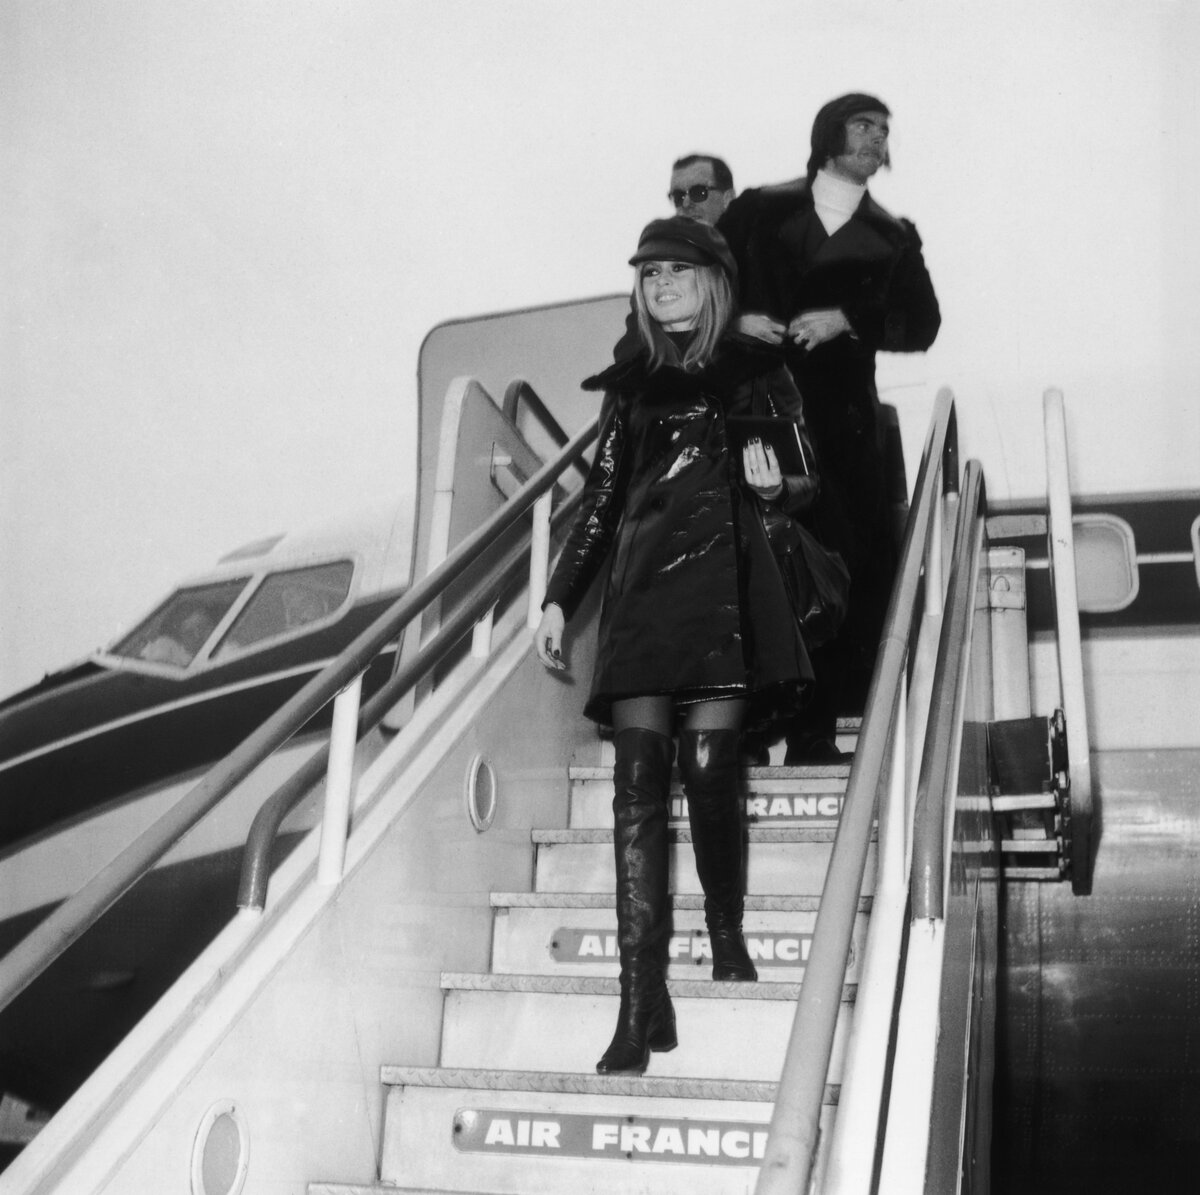 Brigitte Bardot francia színésznő megérkezik a londoni repülőtérre (ma Heathrow) barátja, Patrick Gilles kíséretében, 1968. december 11. Párizsból érkezett, hogy részt vegyen legújabb filmje, az Edward Dmytryk által rendezett "Shalako" premierjén. (Fotó: Central Press/Hulton Archive/Getty Images)